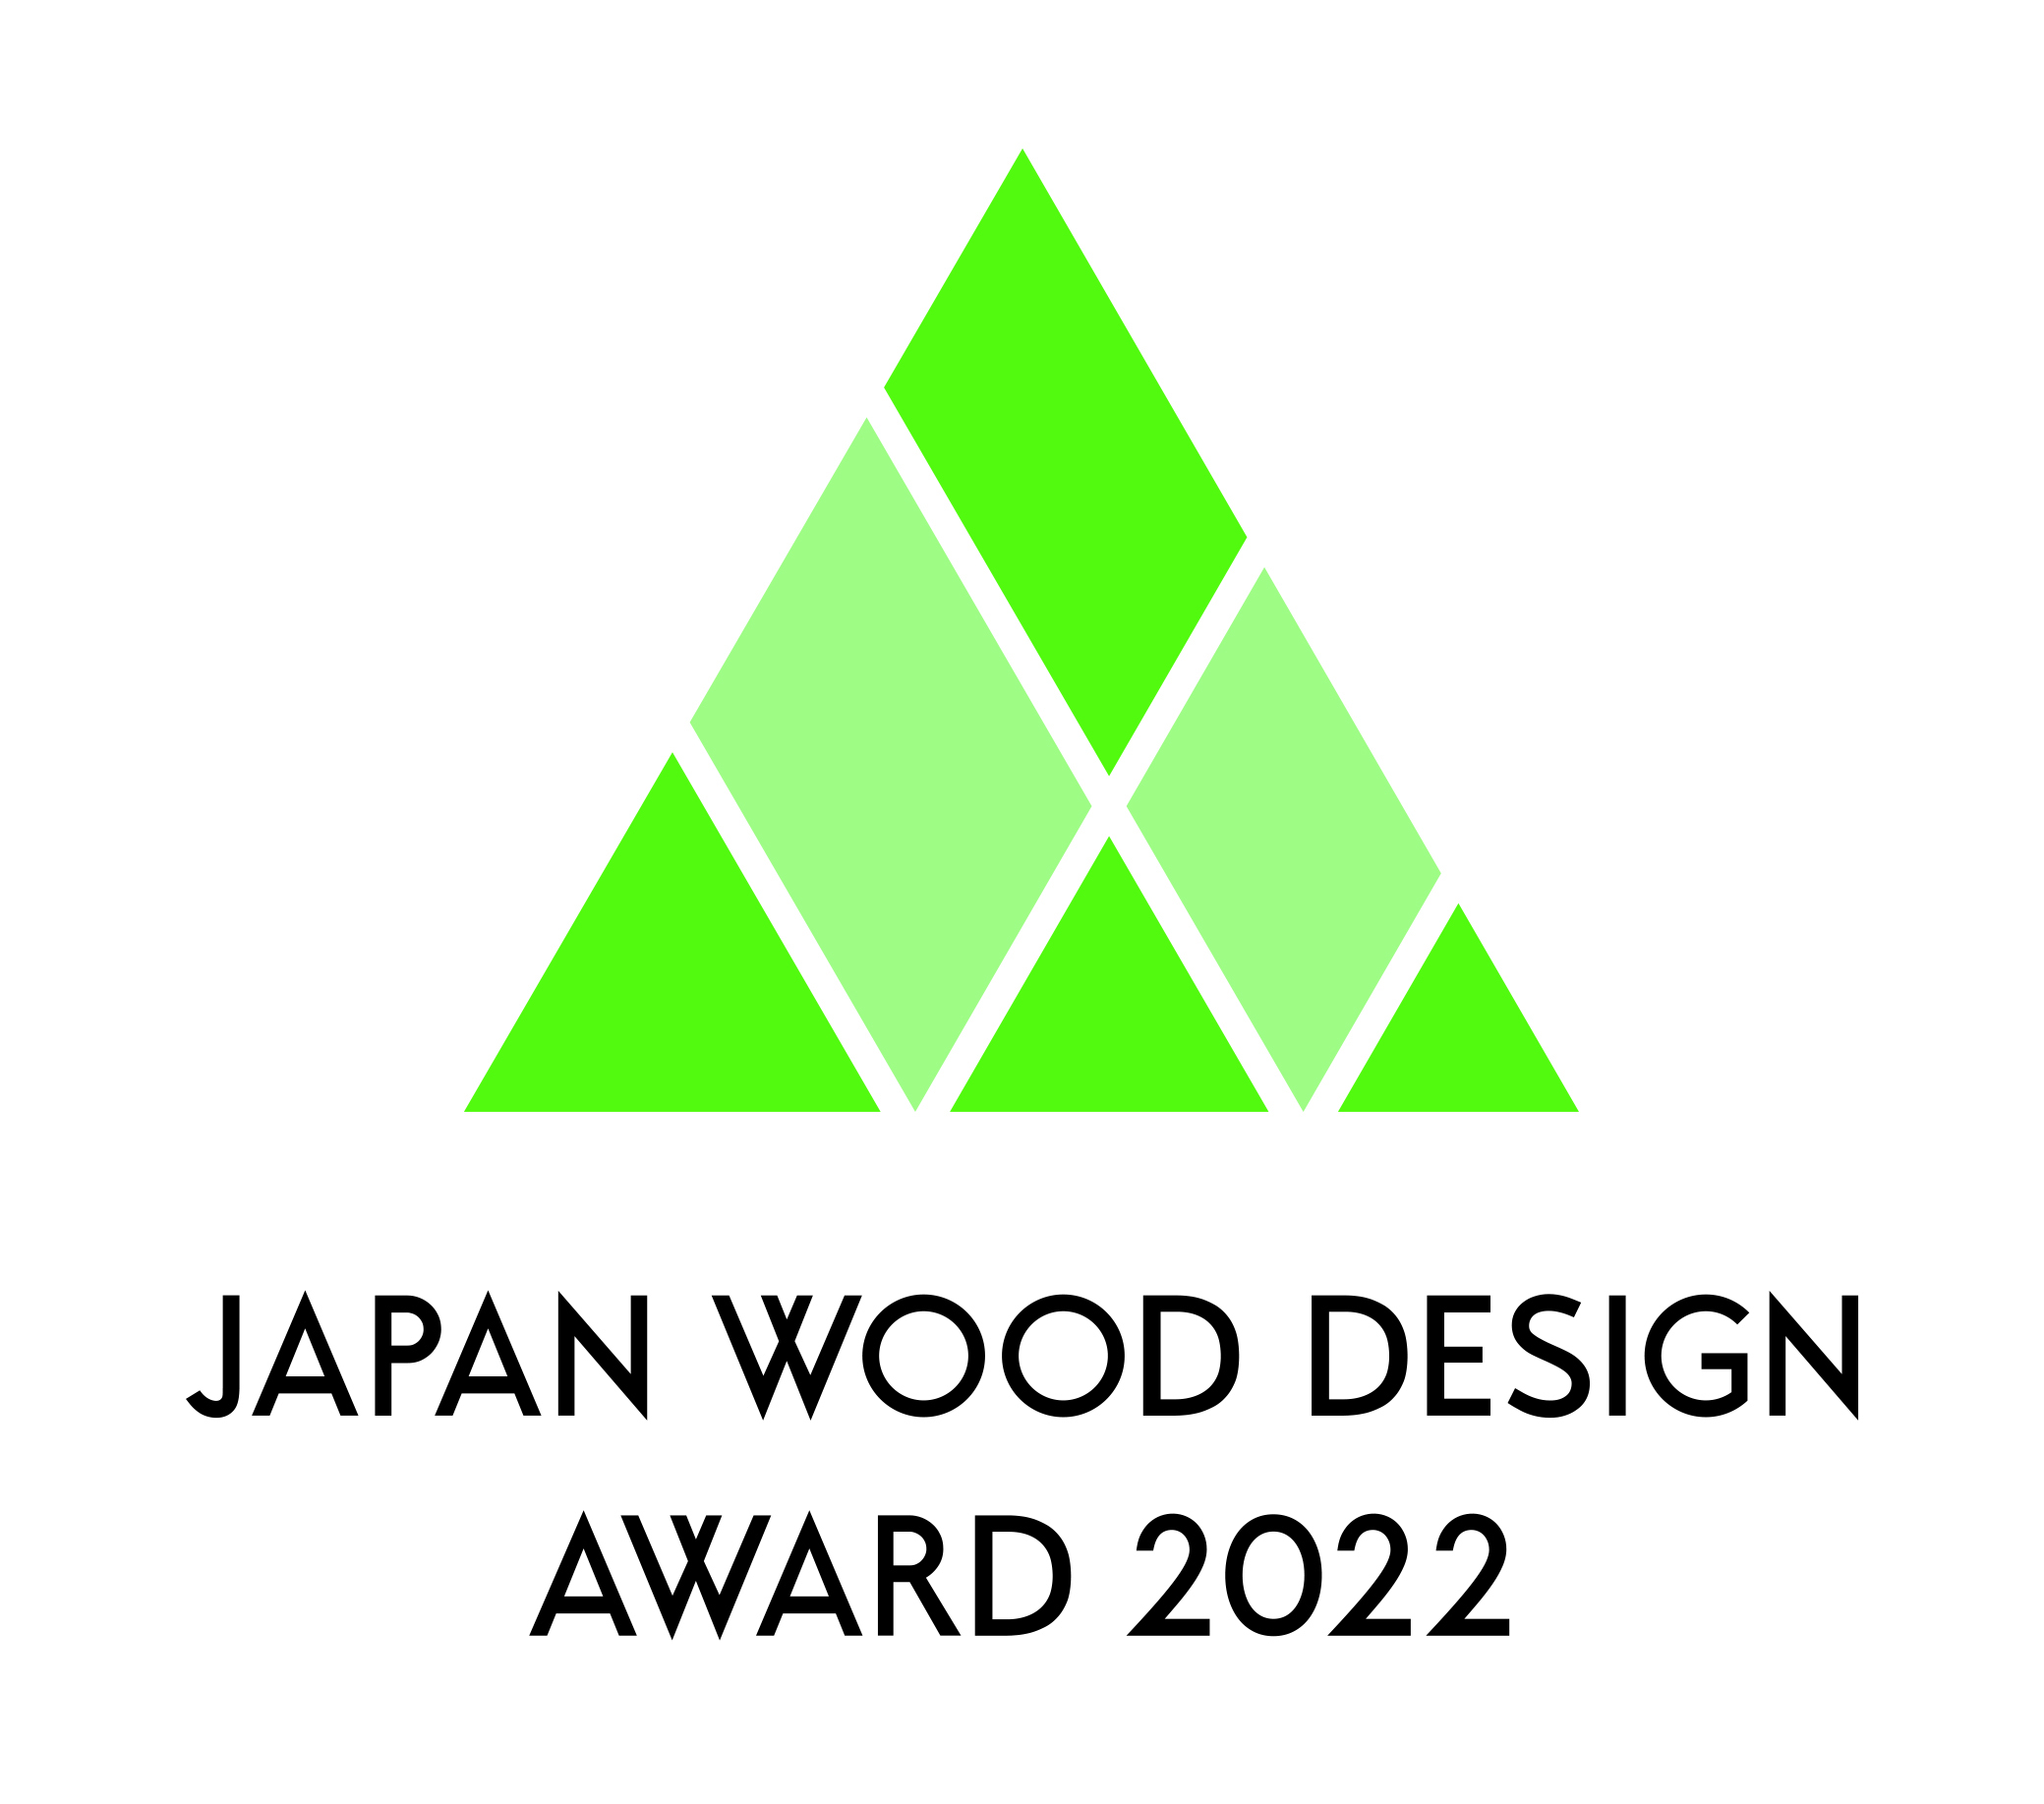 「ウッドデザイン賞2022」の受賞作品188点が決定されました